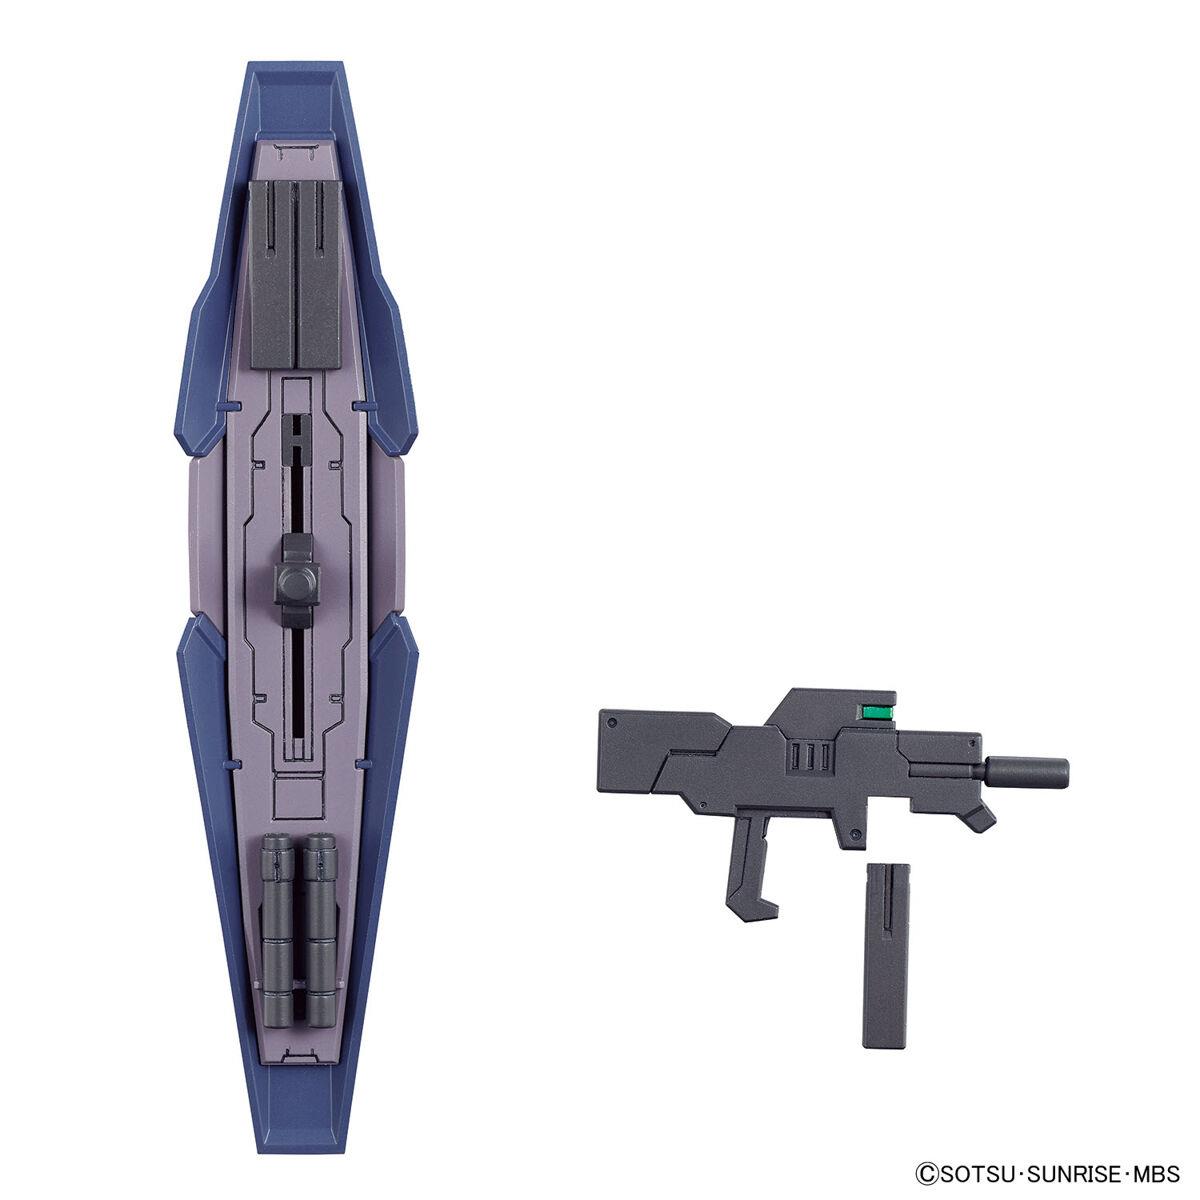 Gundam: Gundvölva HG Model